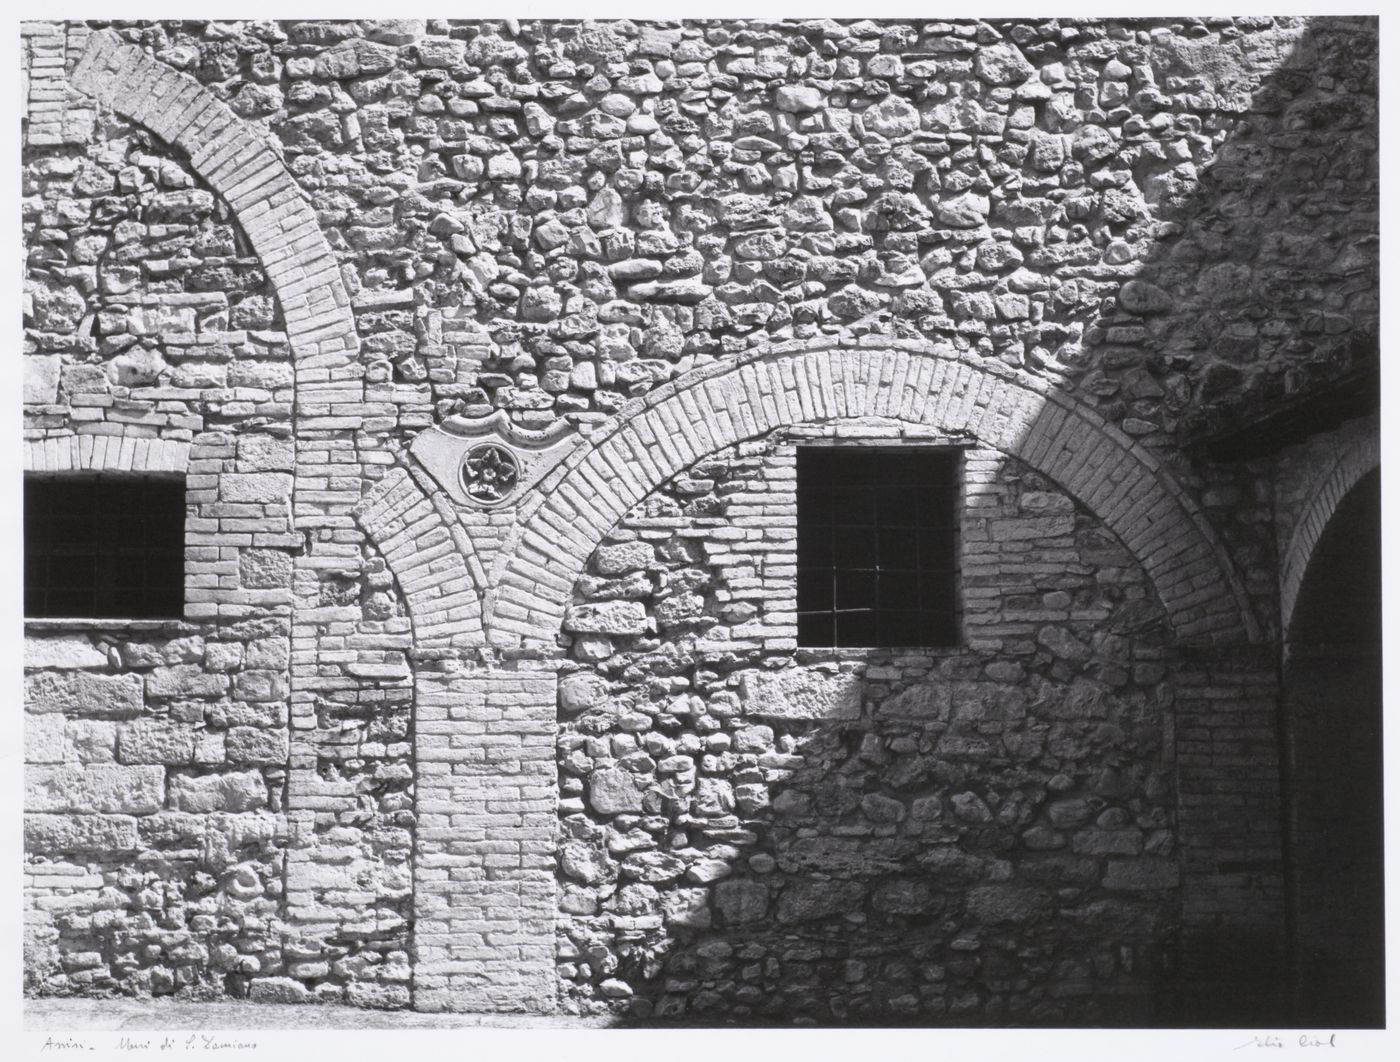 Muri di S. Damiano, Assisi, Italy